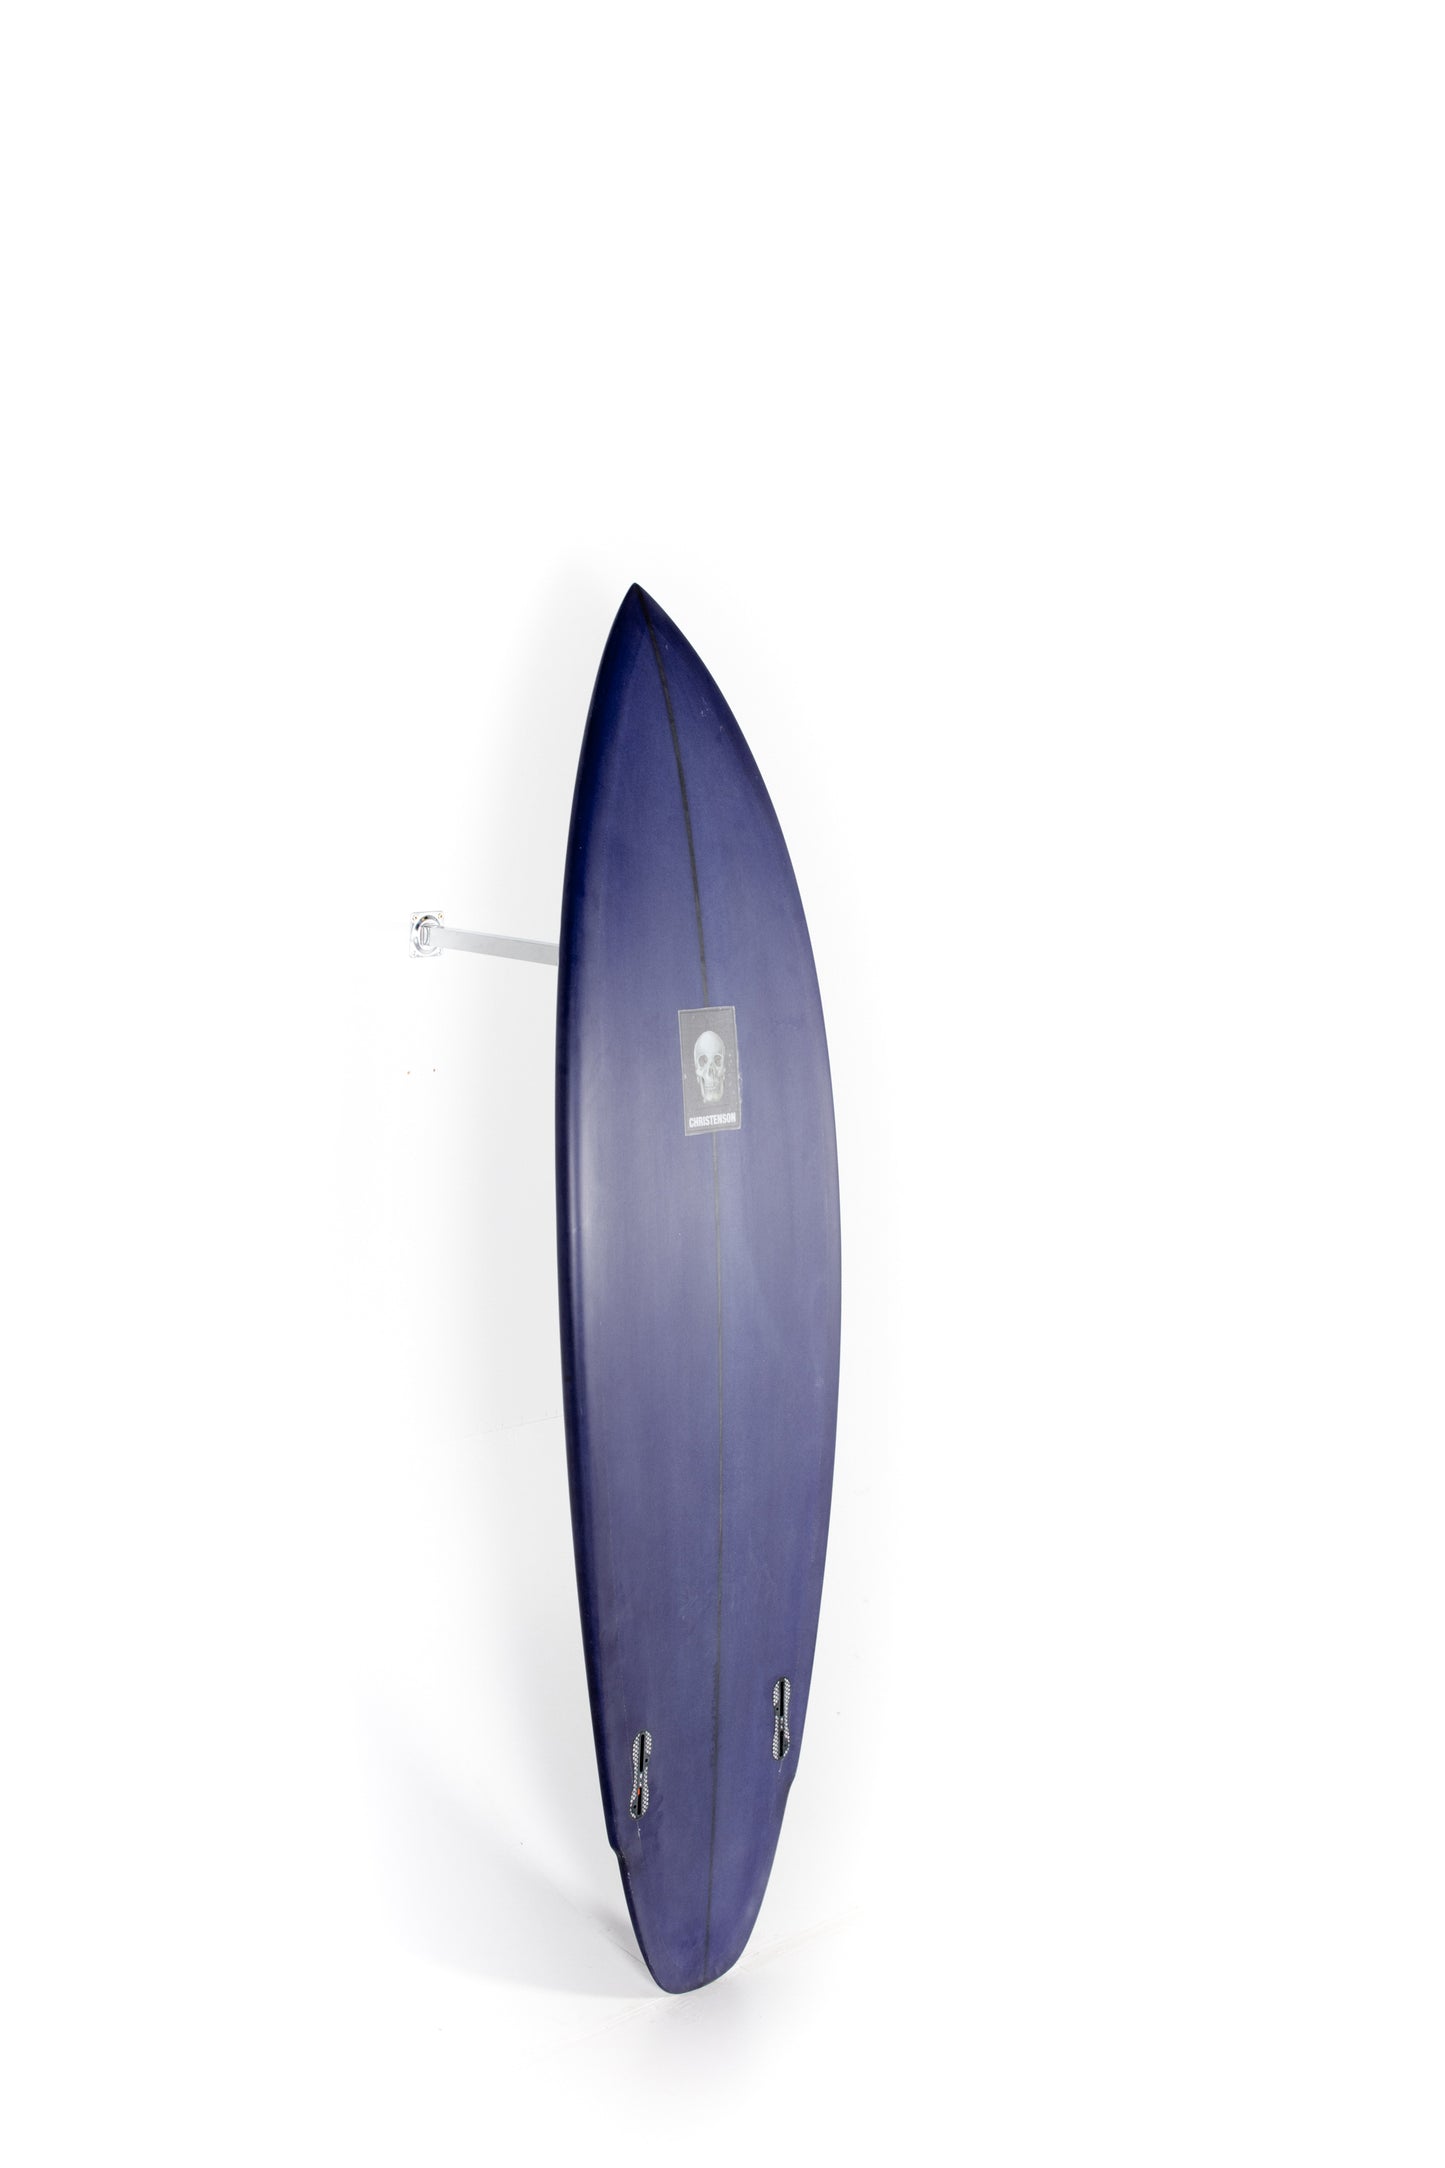 Christenson Surfboards - LANE SPLITTER - 5'8